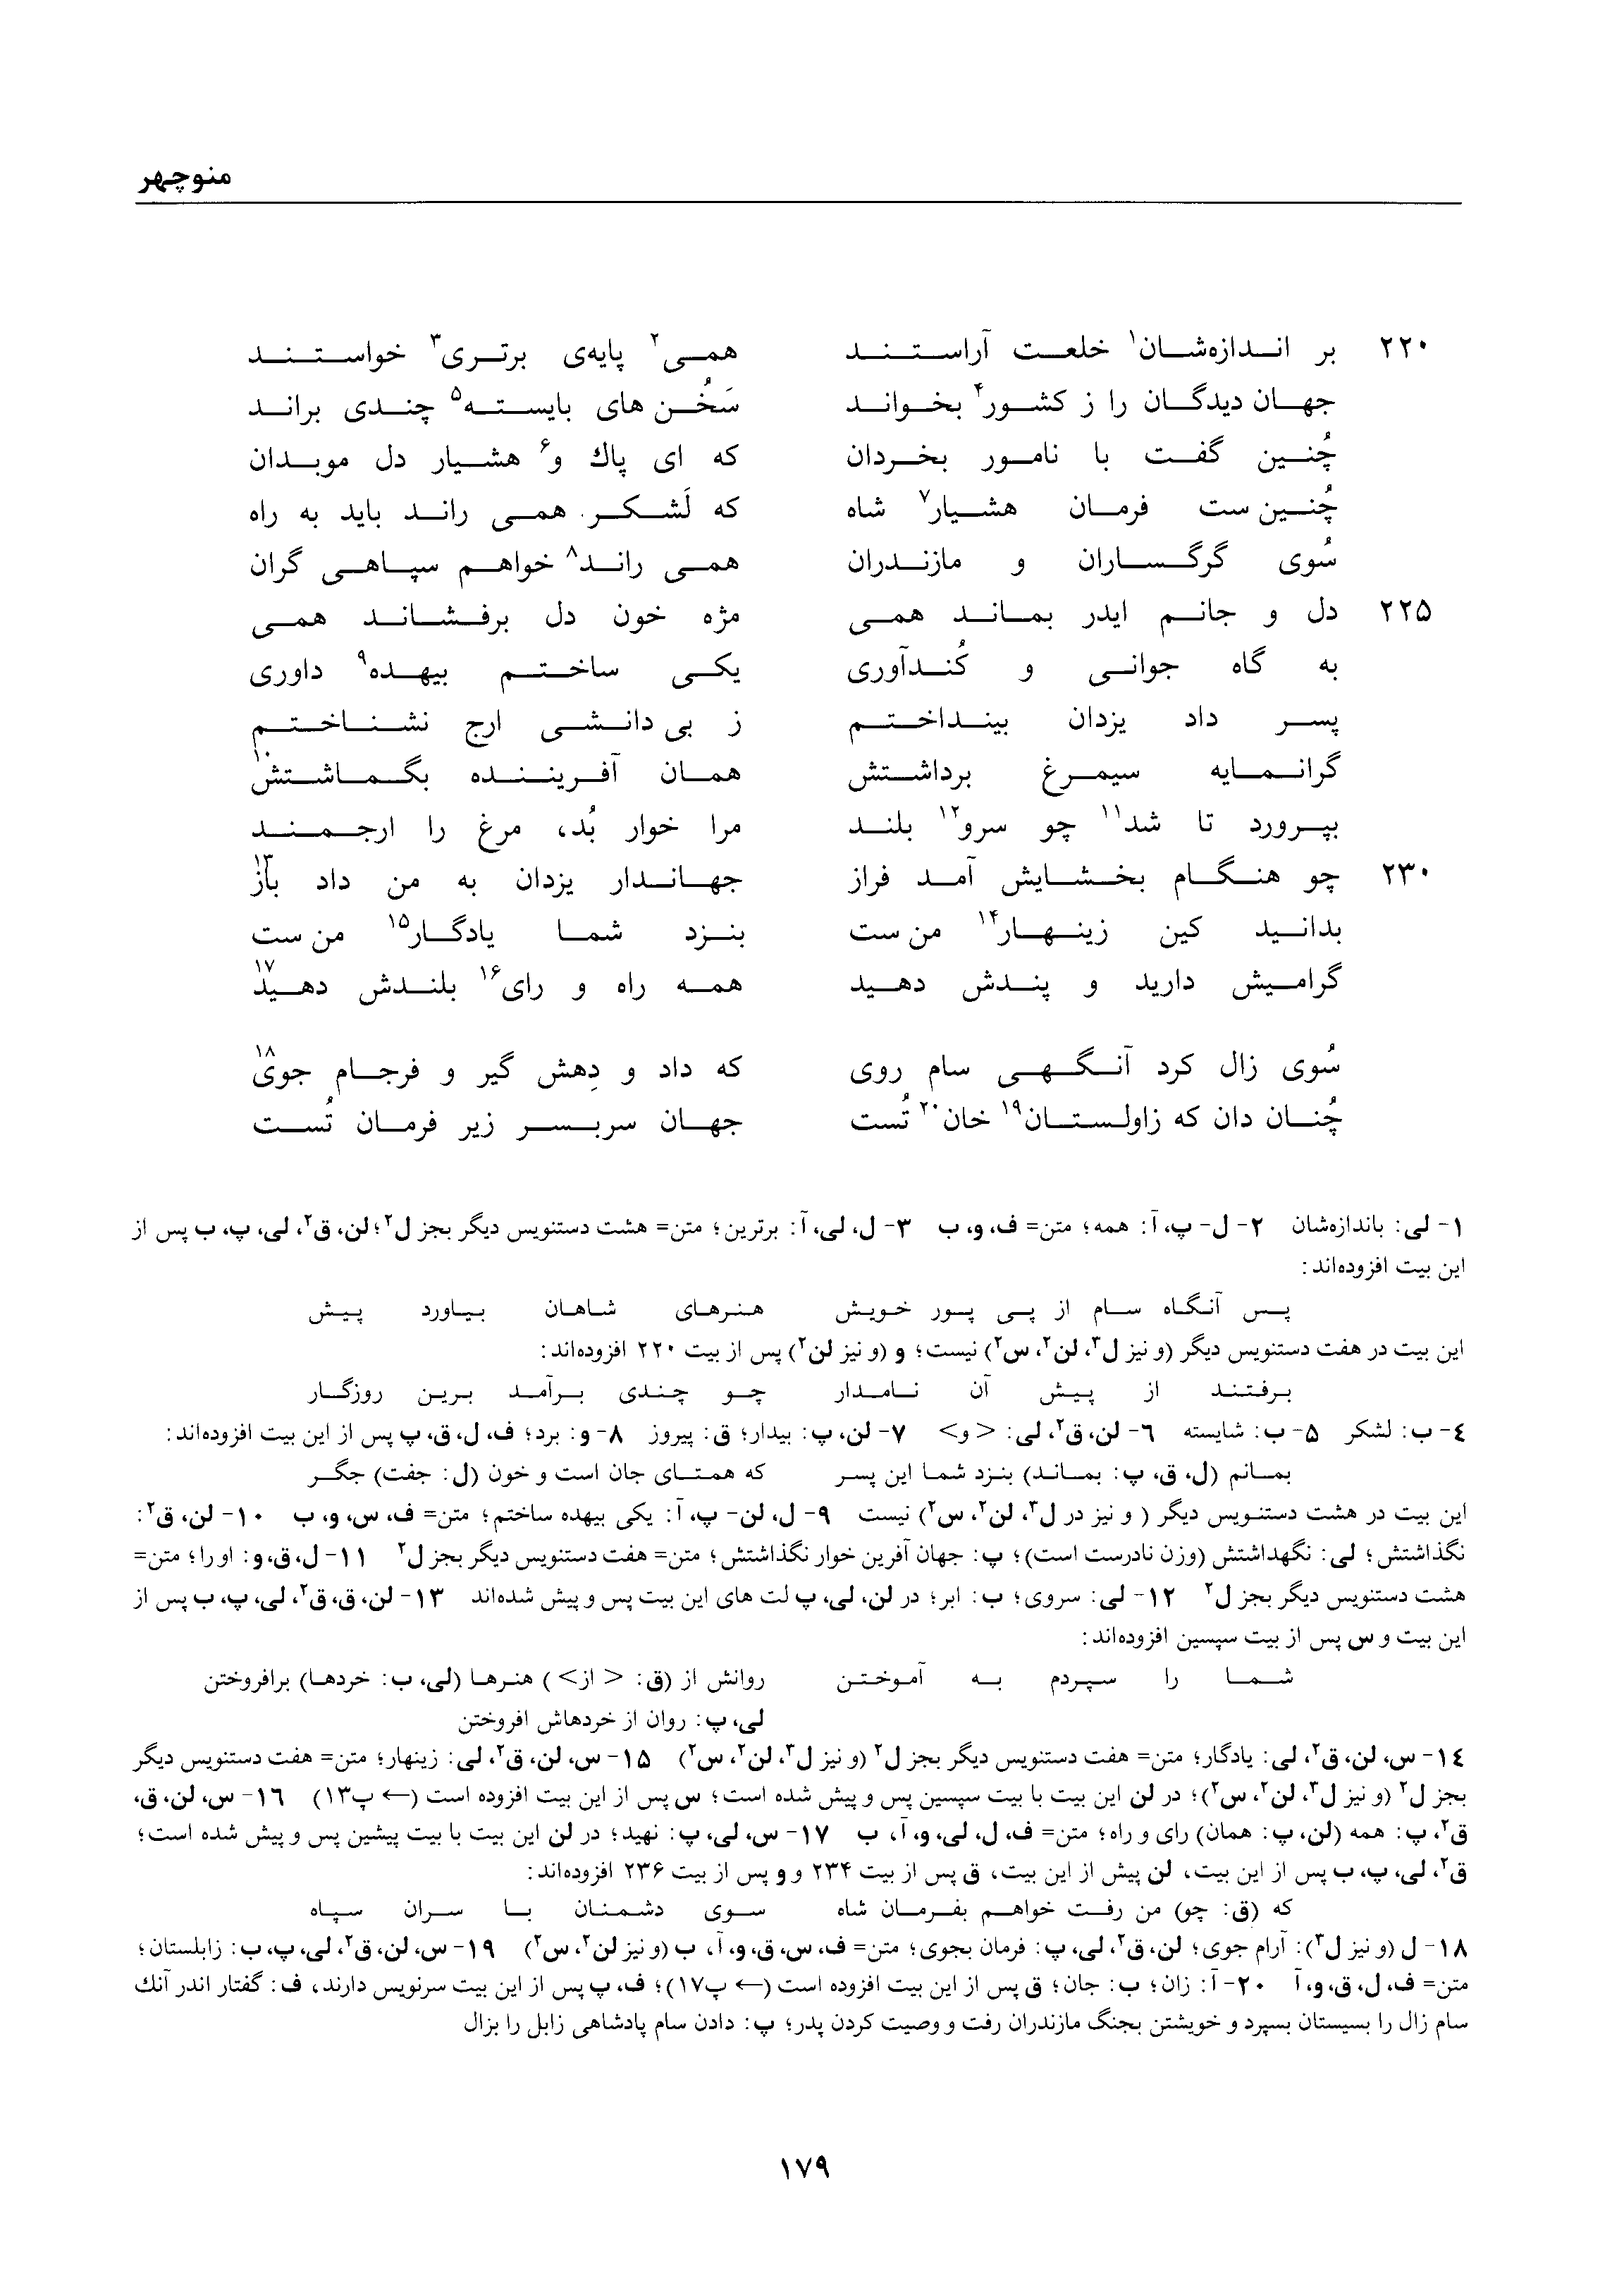 vol. 1, p. 179